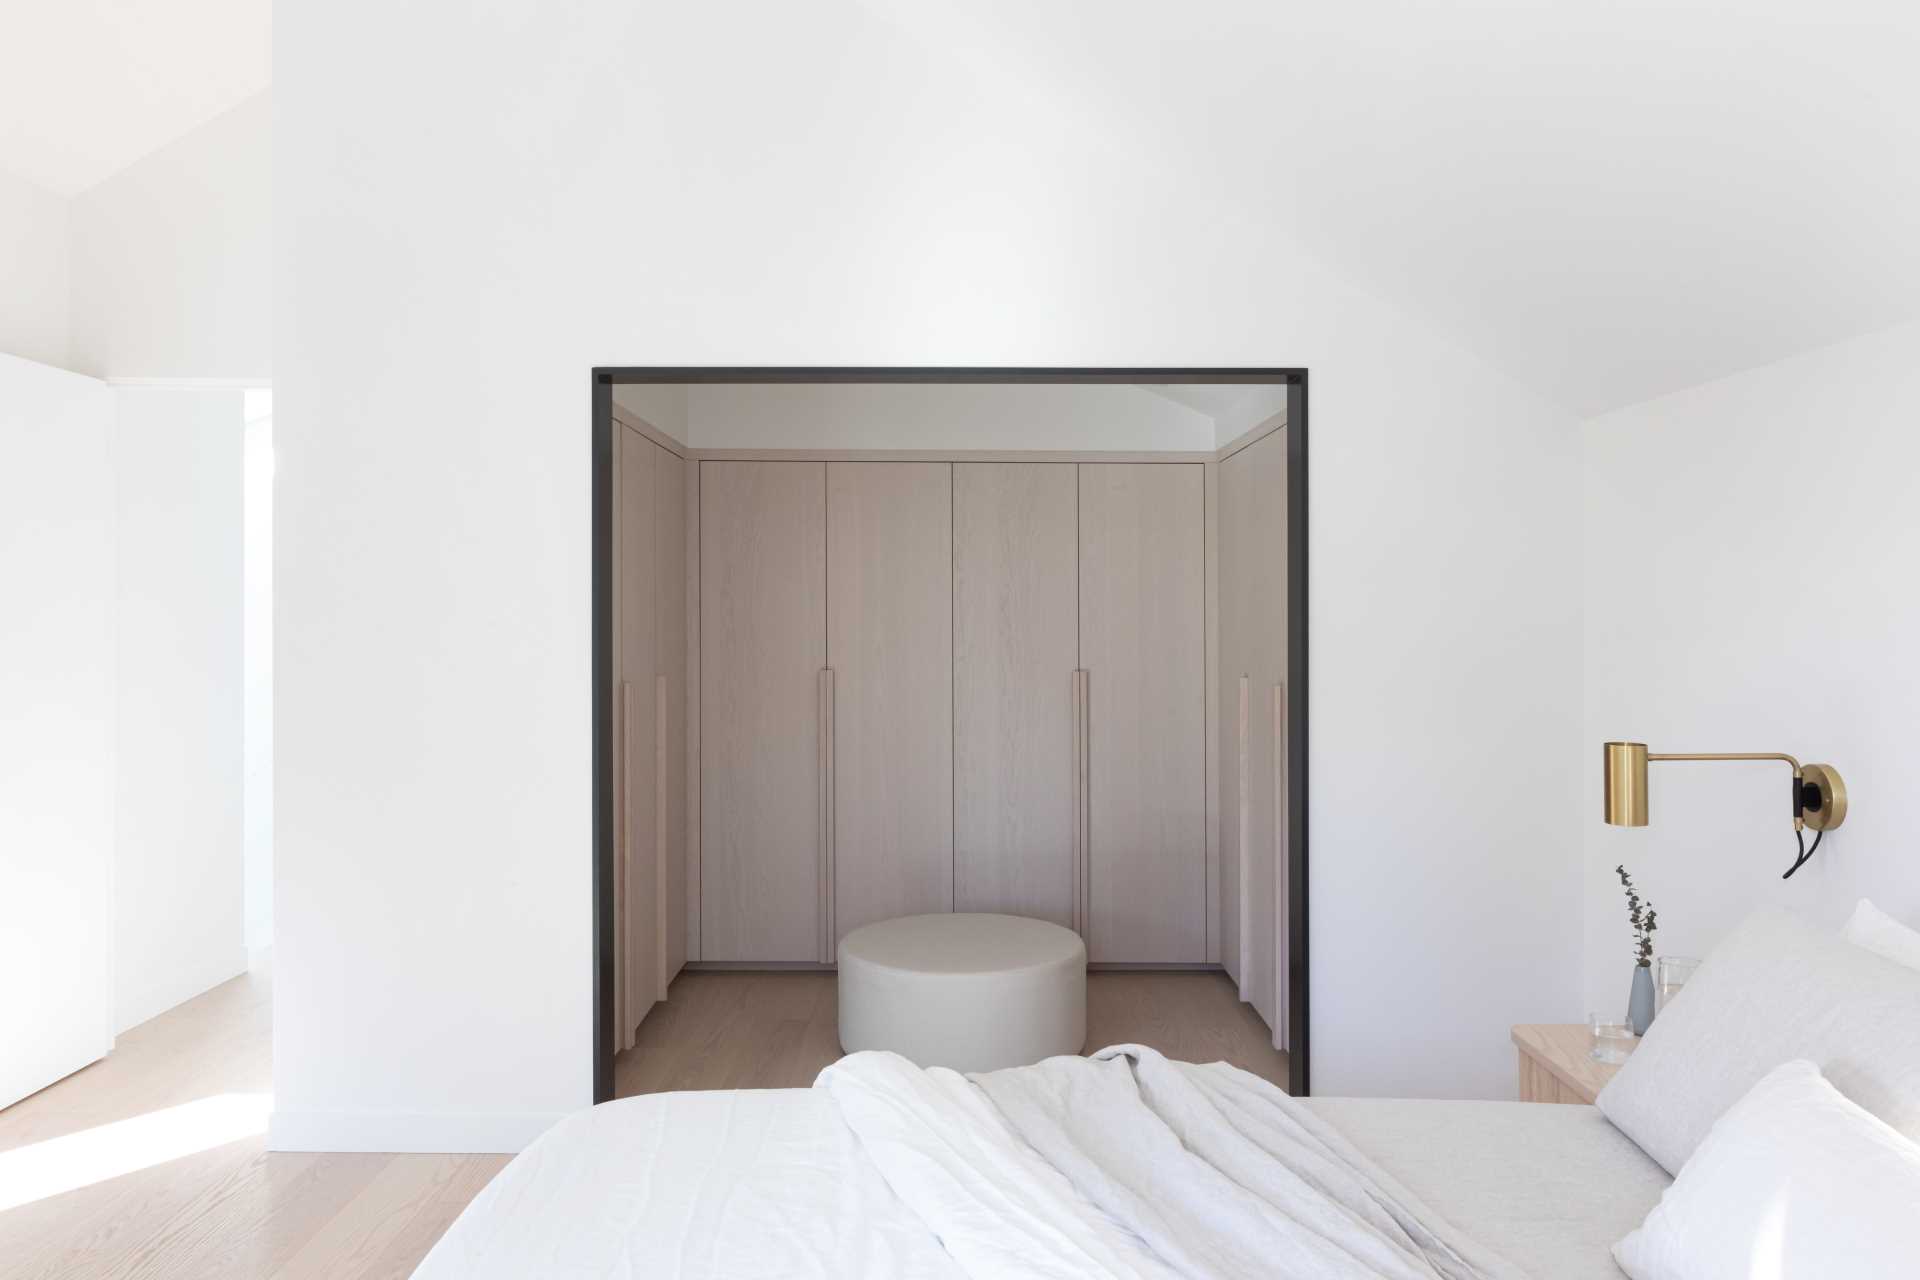 یک اتاق خواب مدرن با کمد دیواری باز با کابینت های چوبی سبک.